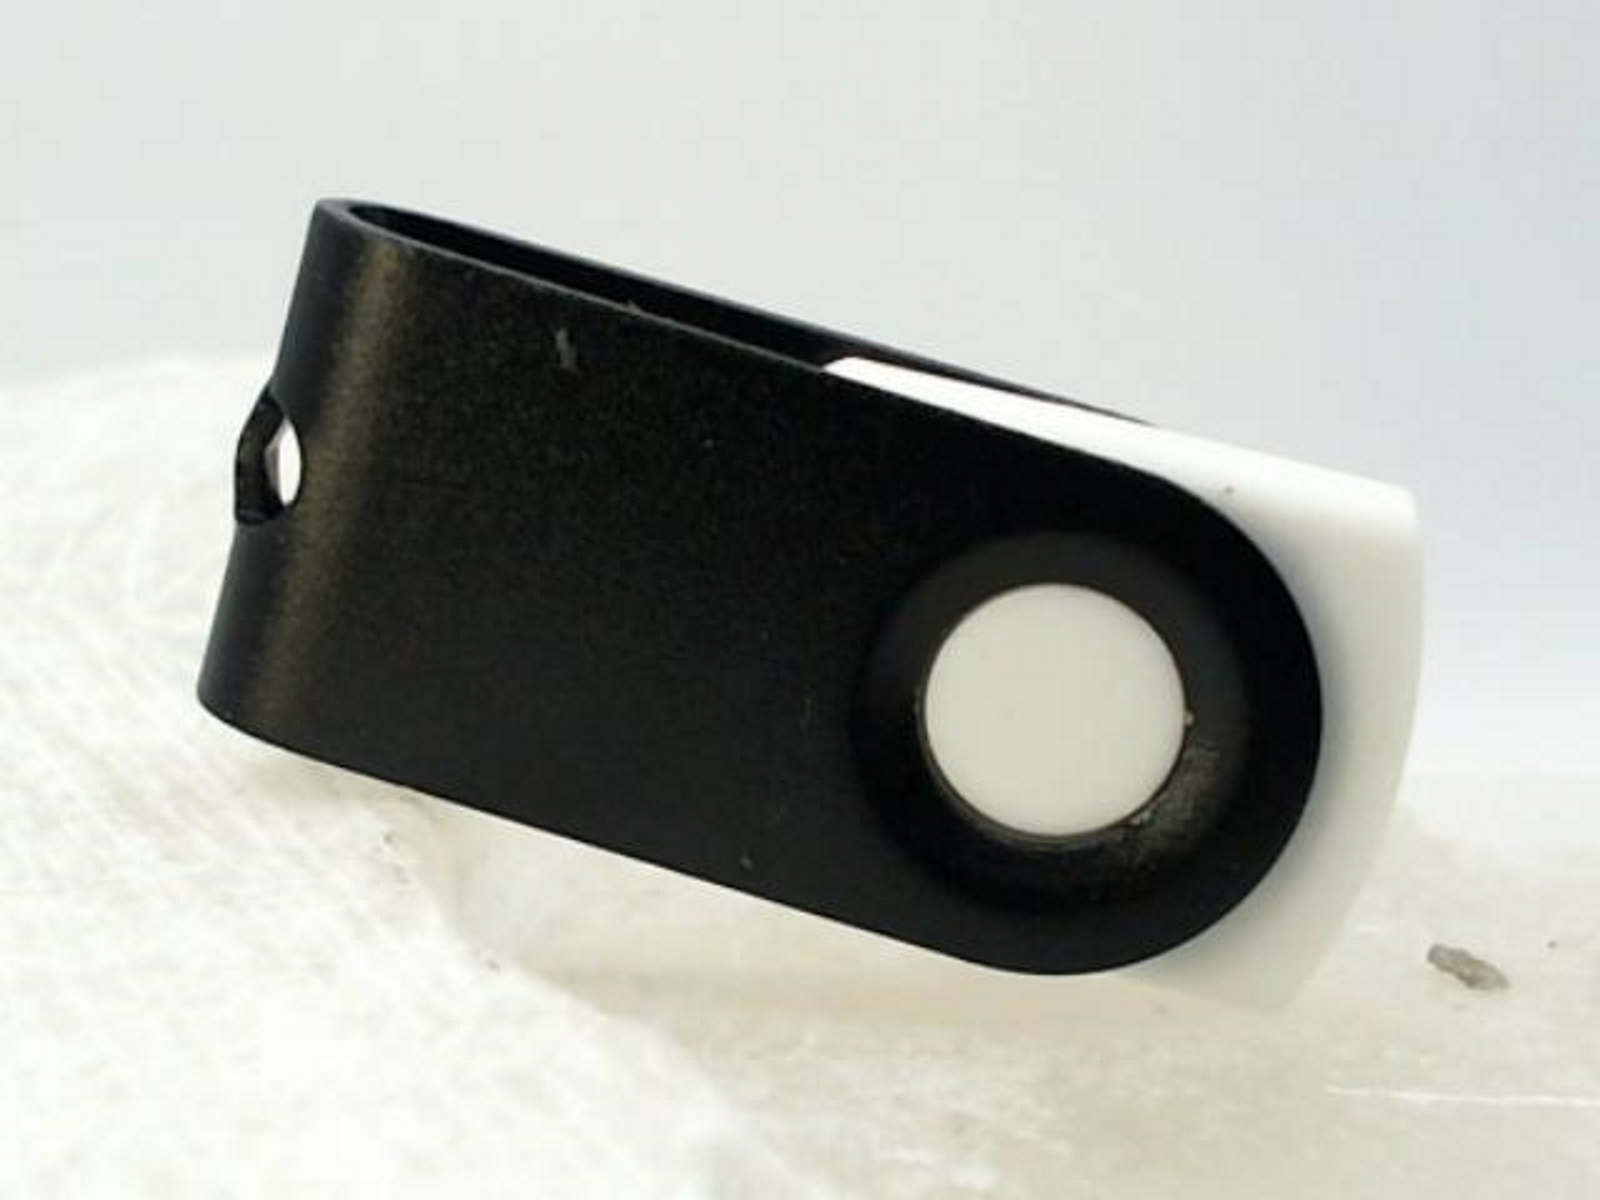 USB GERMANY 4 USB-Stick MINI-SWIVEL GB) ® (Weiß-Schwarz